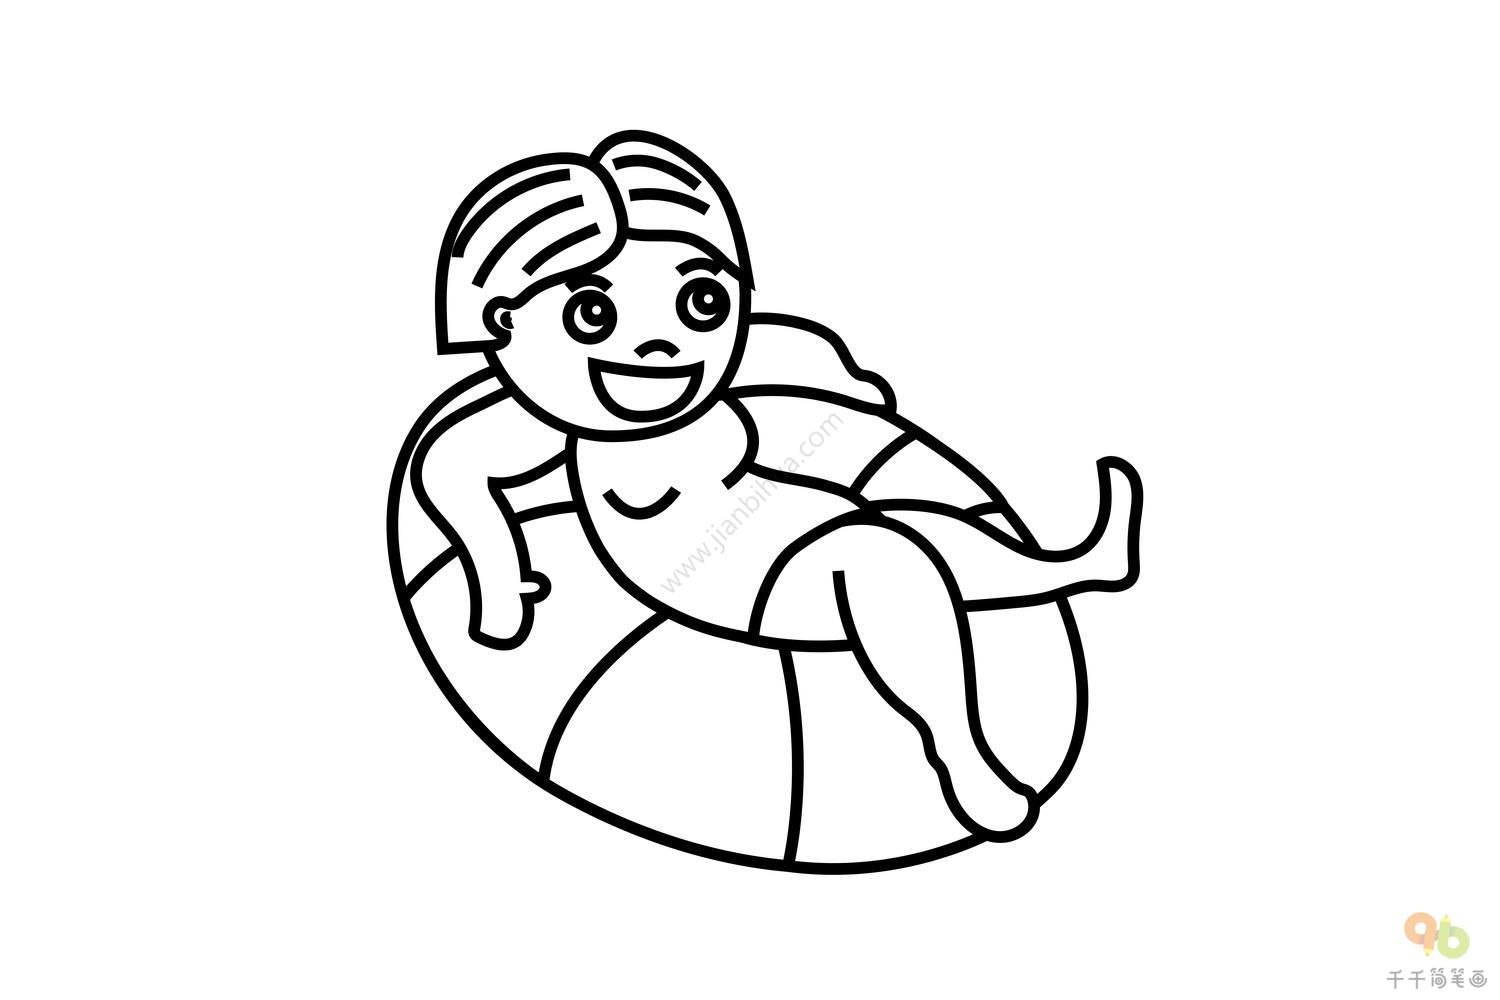 坐在游泳圈上的小女孩简笔画